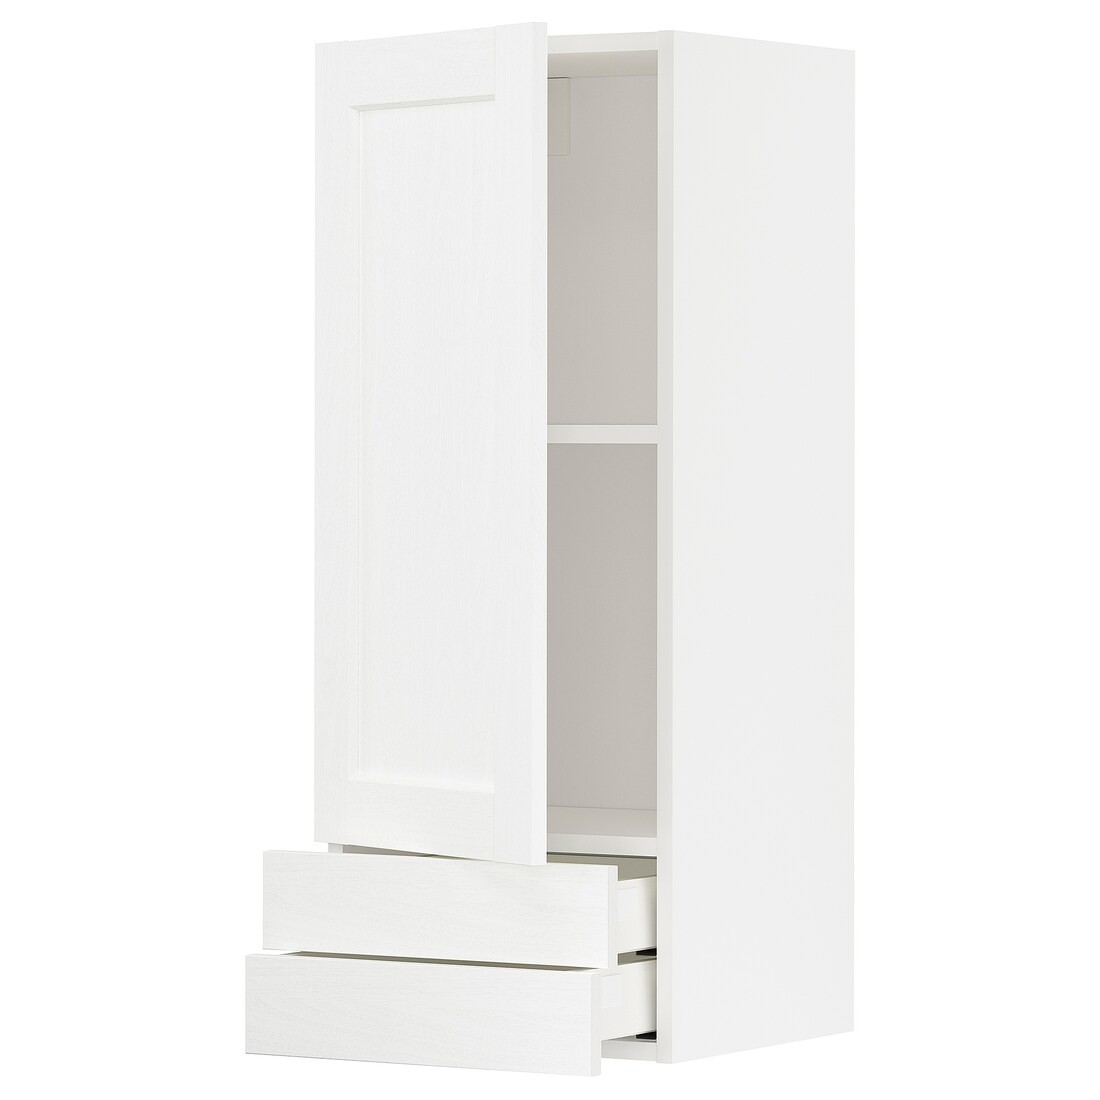 METOD МЕТОД / MAXIMERA МАКСИМЕРА Настенный шкаф, дверь / 2 ящика, белый Enköping / белый имитация дерева, 40x100 см